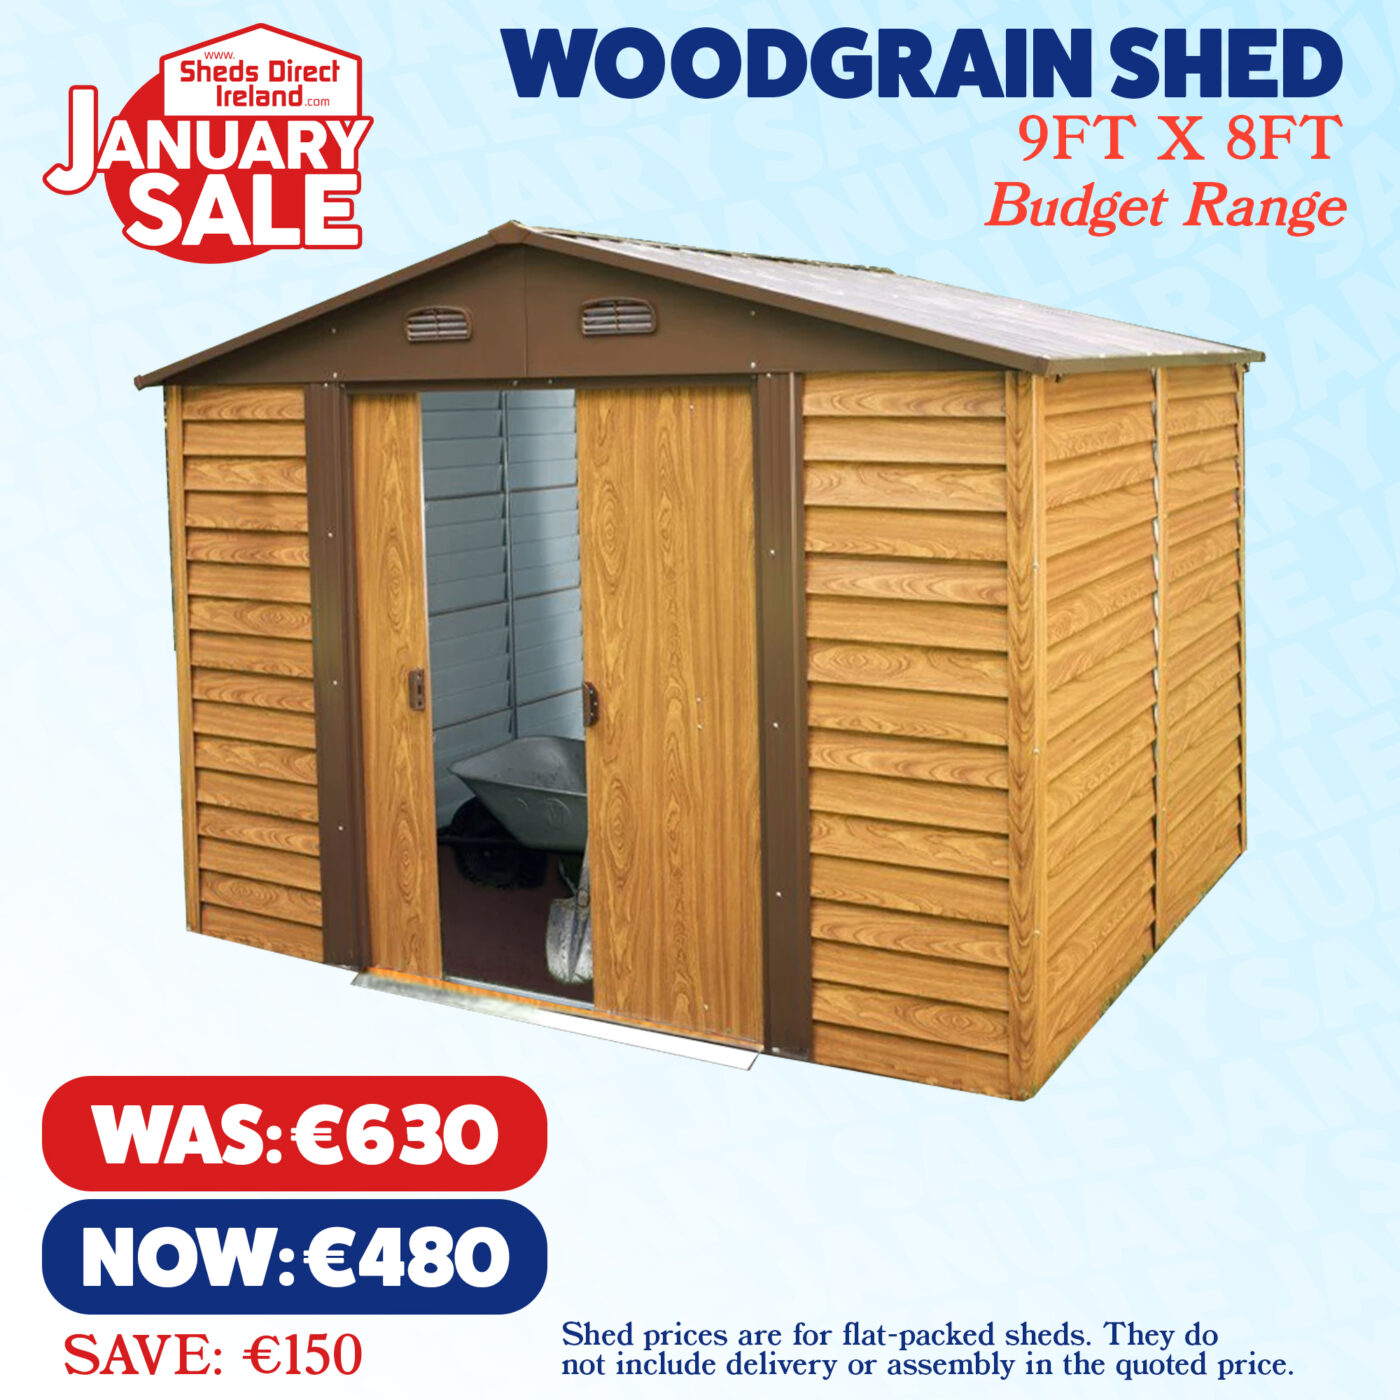 January Sale - woodgrain shed